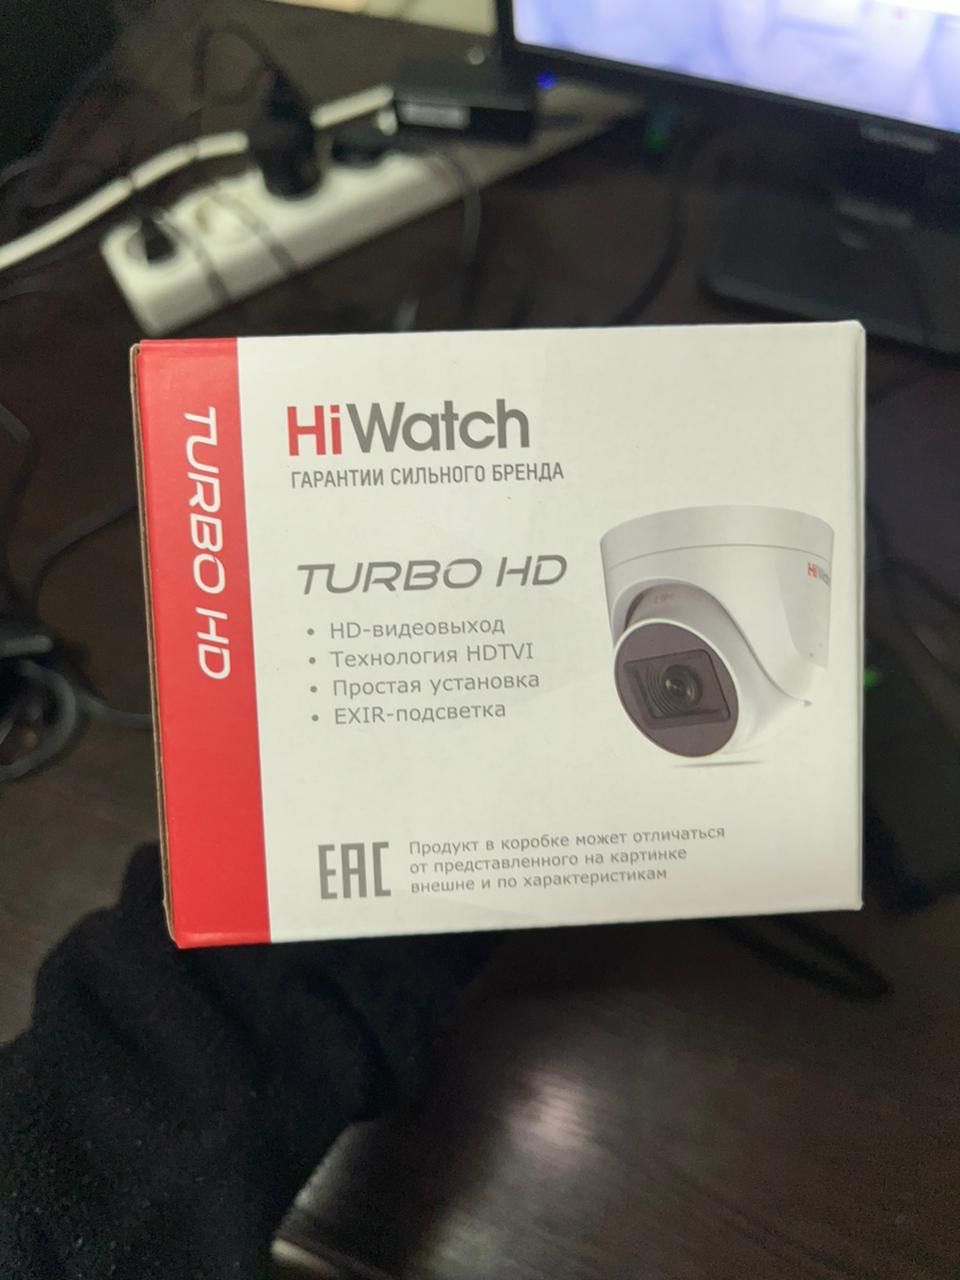 Hiwatch 8 камер с регистратором, память 1 ТБ, Видеонаблюдение, камера